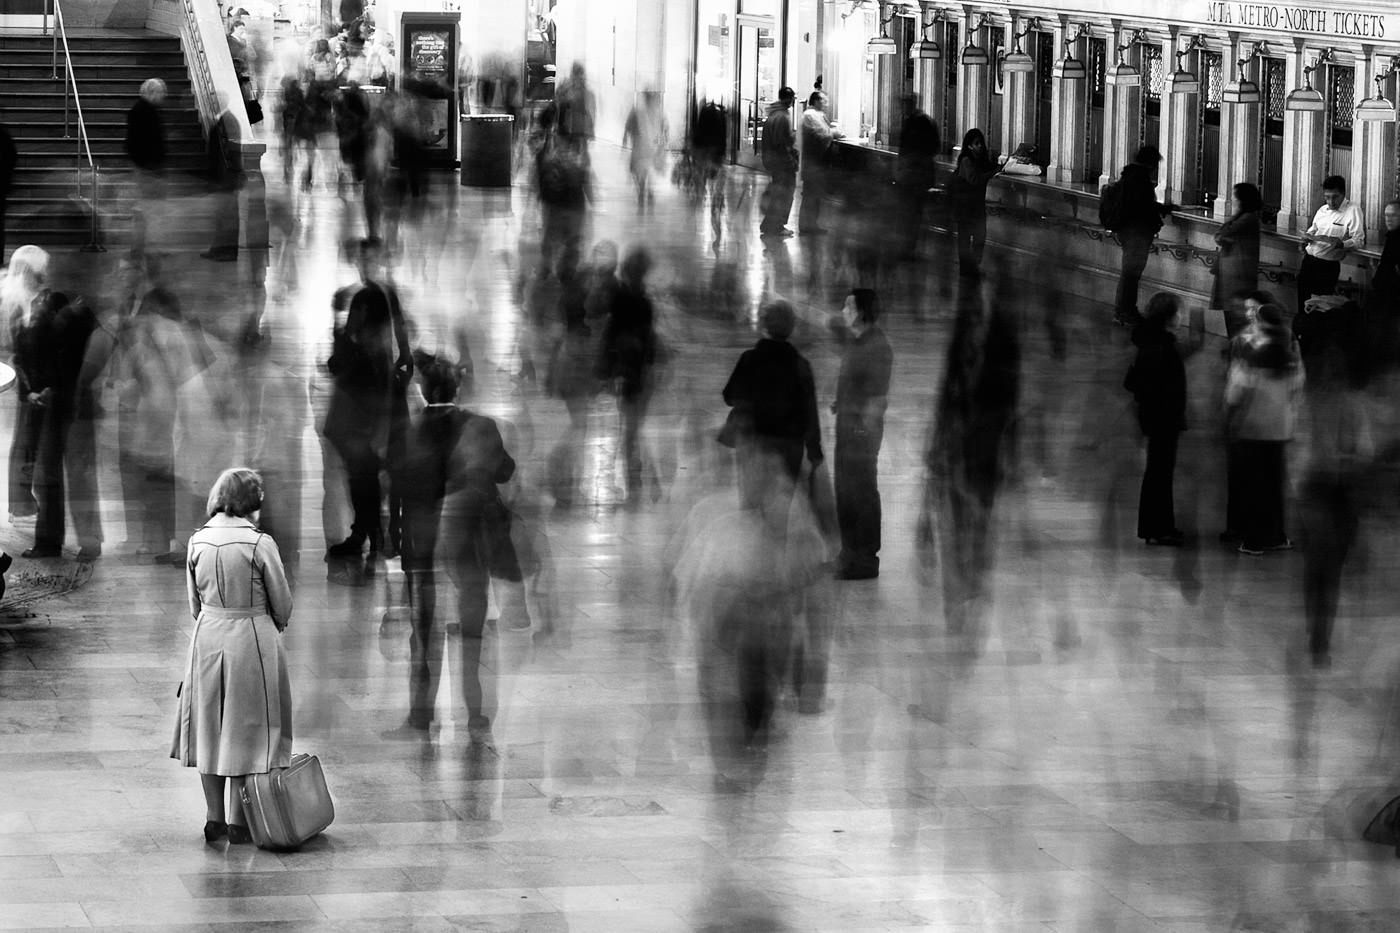 rejsende står stille i travl hall of Grand Central Station